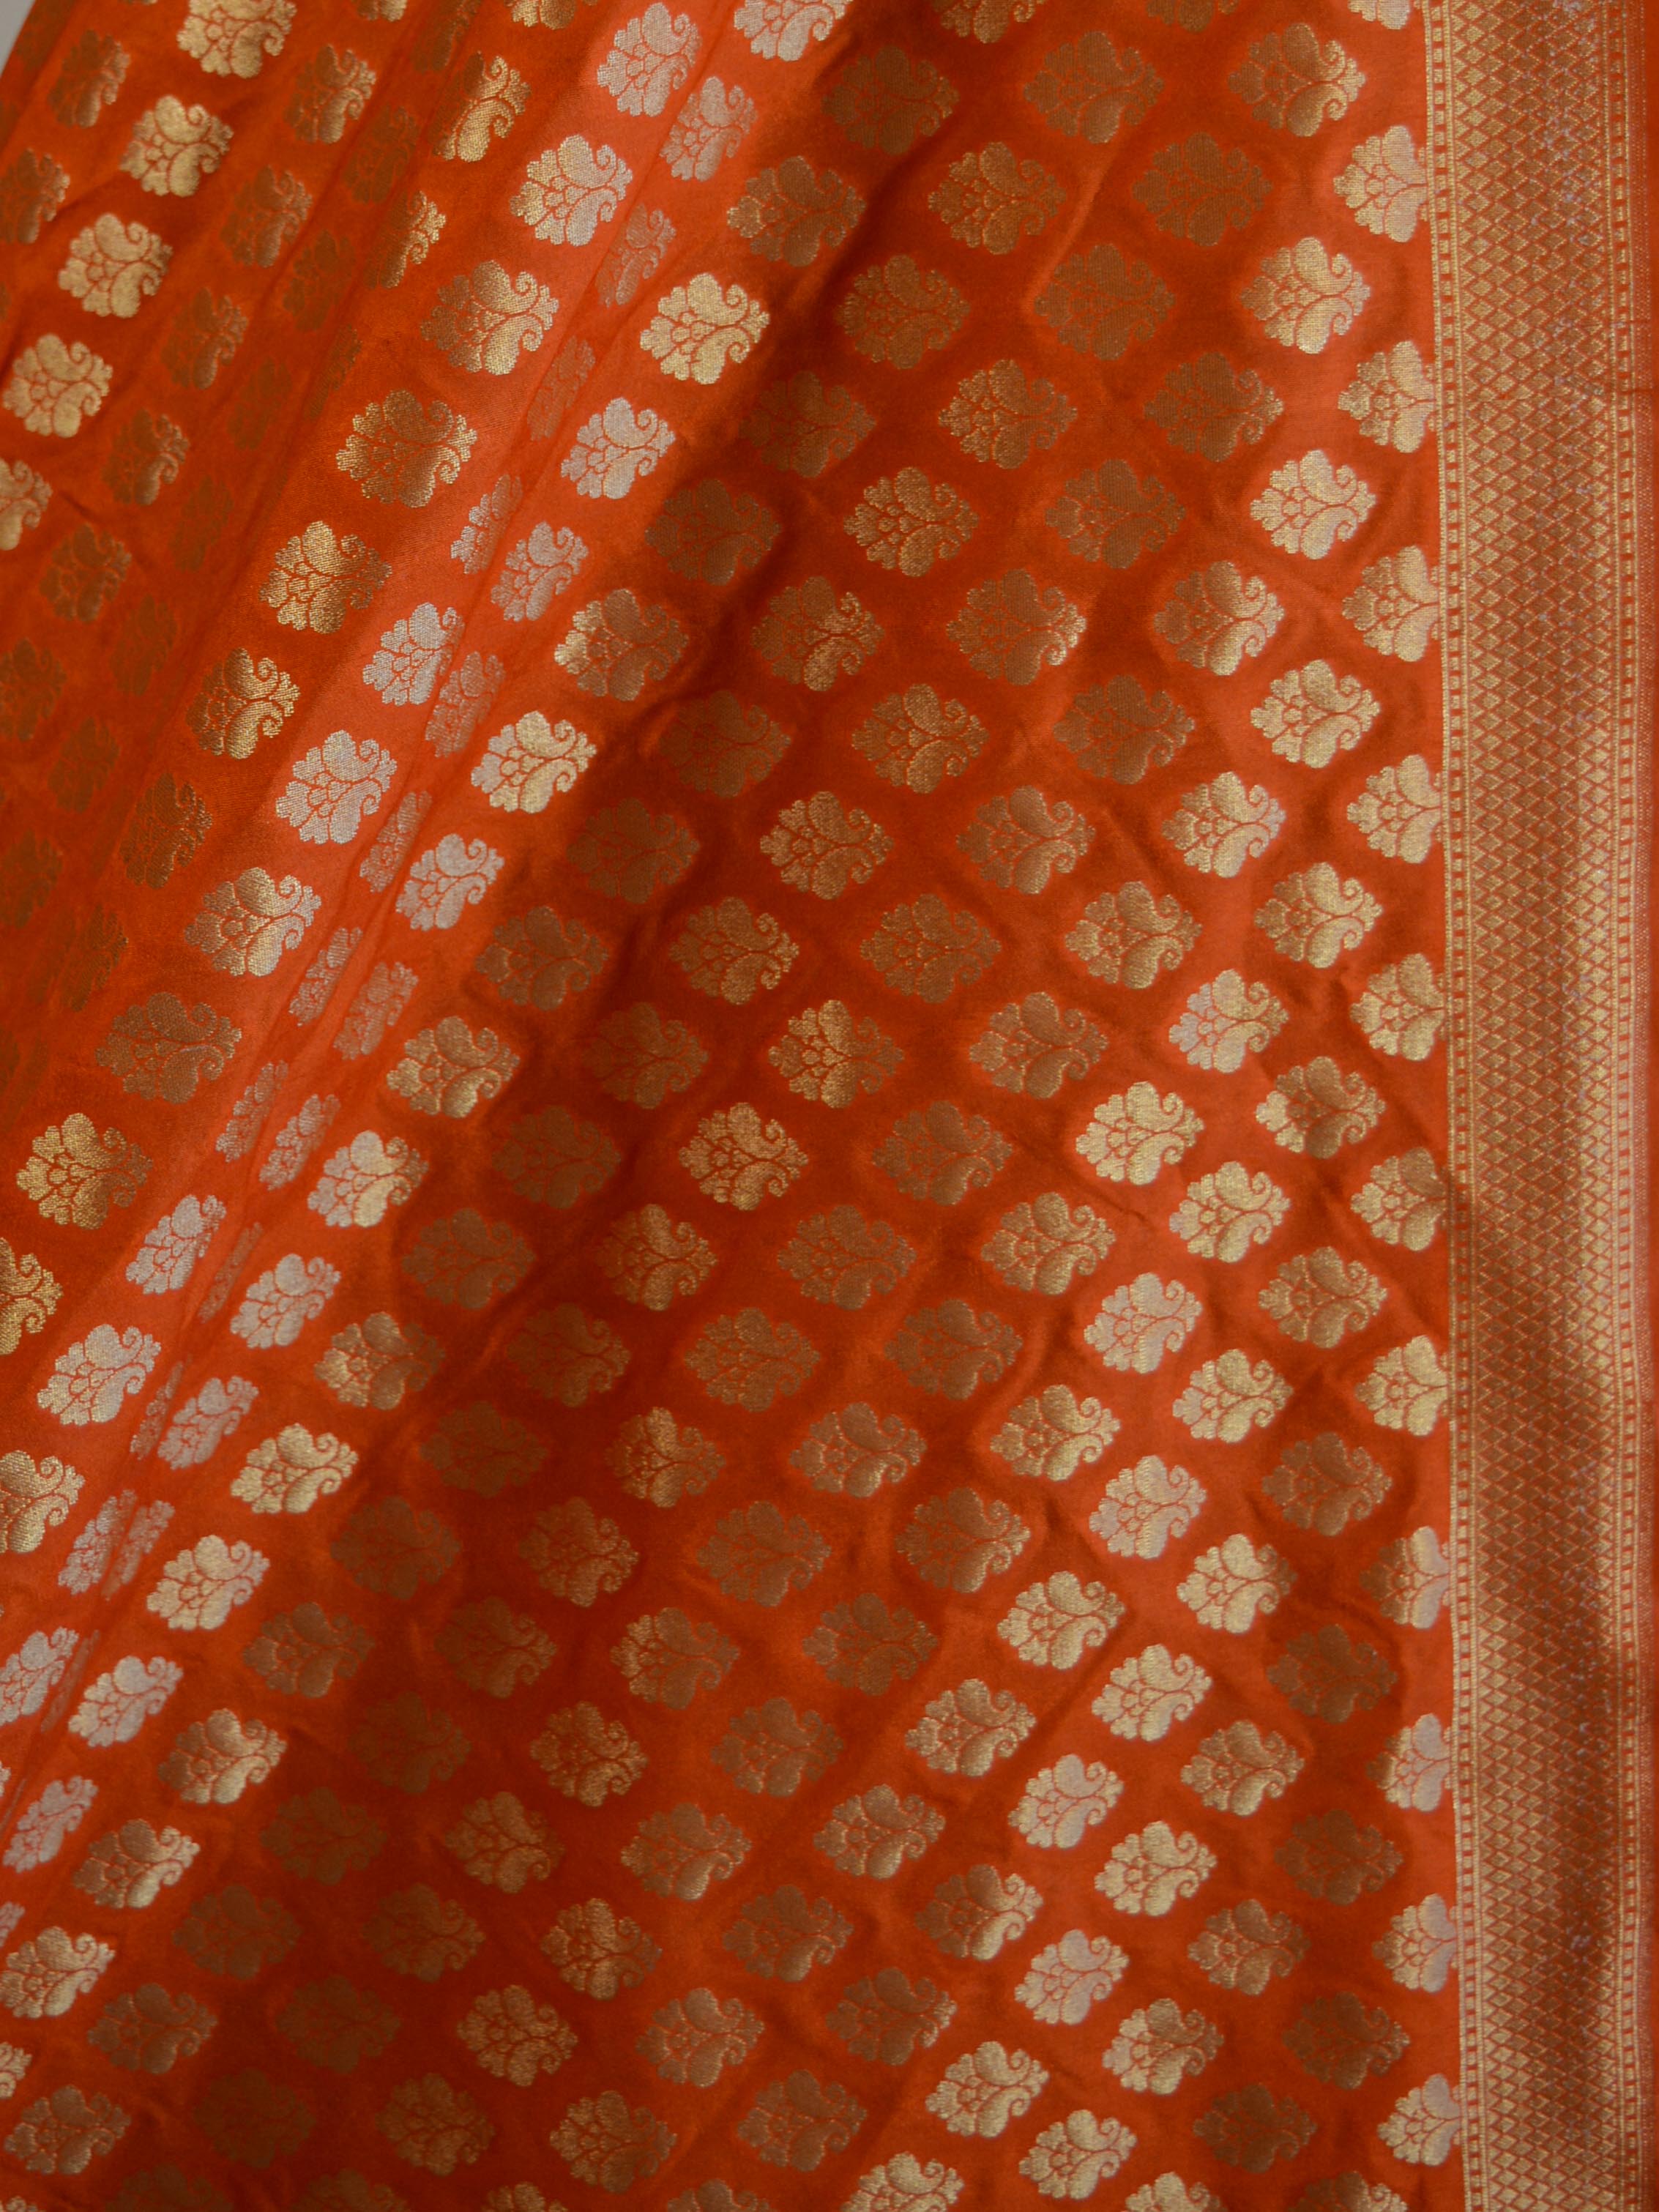 Banarasee Art Silk Buti Design-Orange